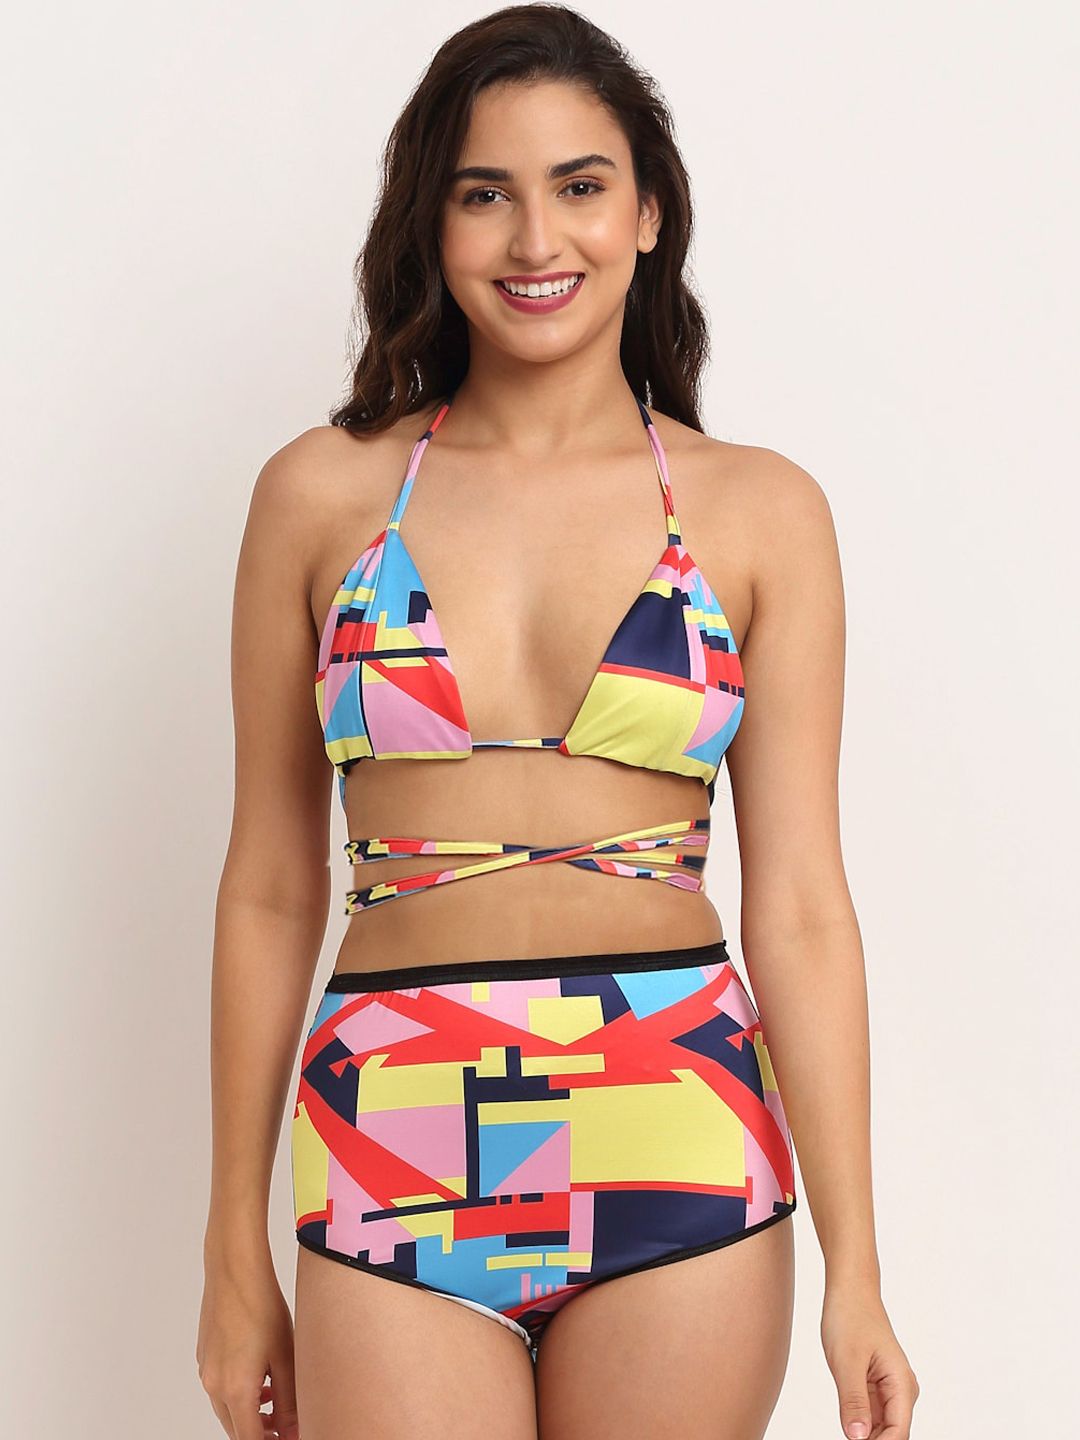 EROTISSCH Women Yellow & Blue Printed Swim Bikini Bra Price in India